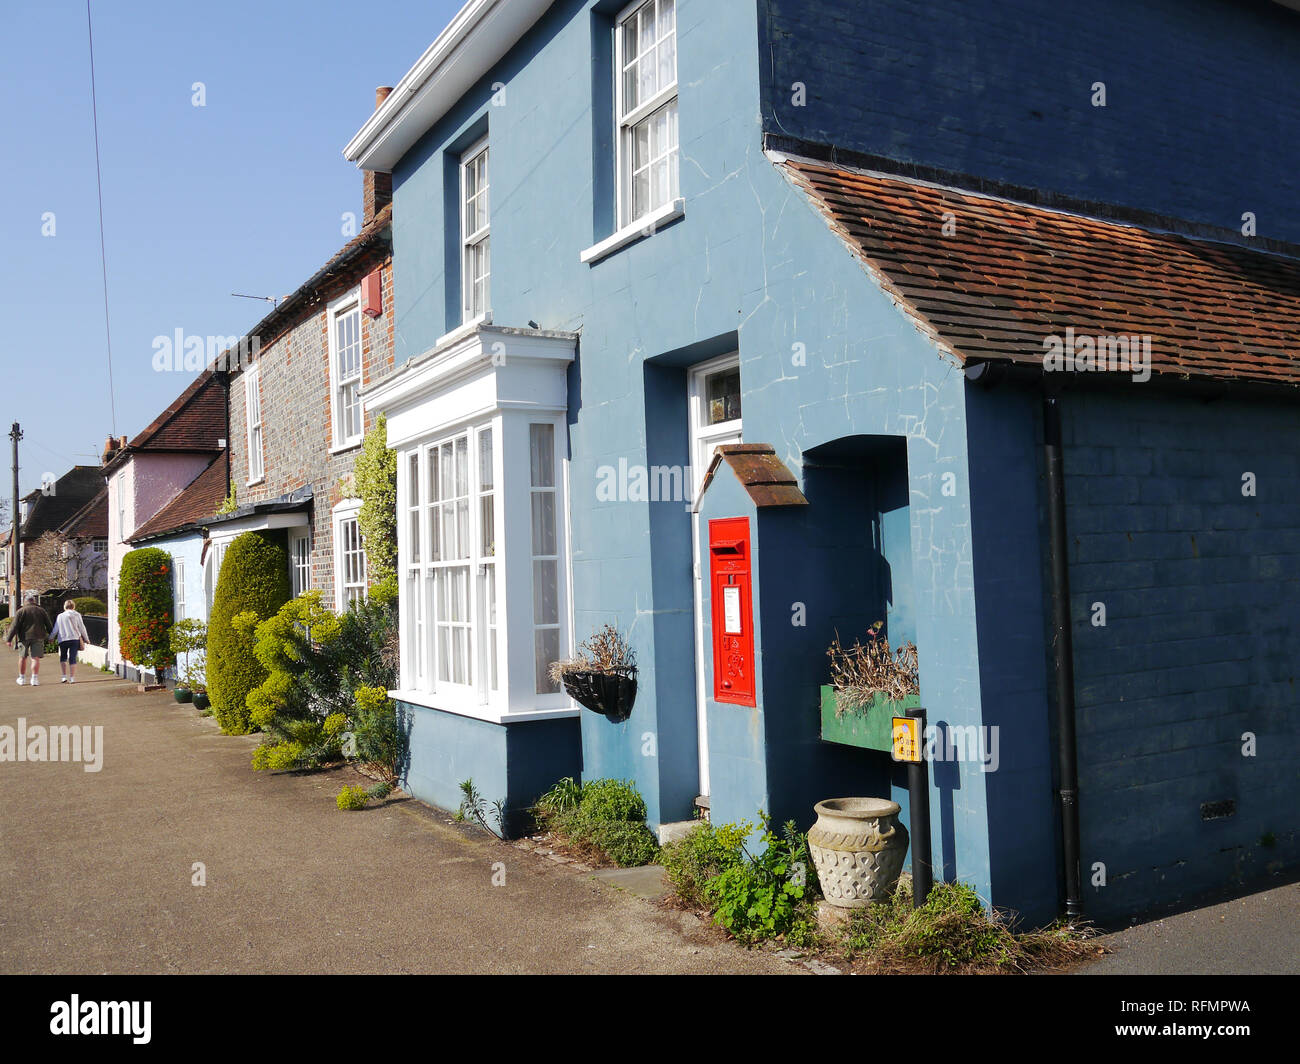 Una casa del villaggio di Portchester, Inghilterra, con un Royal Mail casella di posta sulla parete esterna. Foto Stock